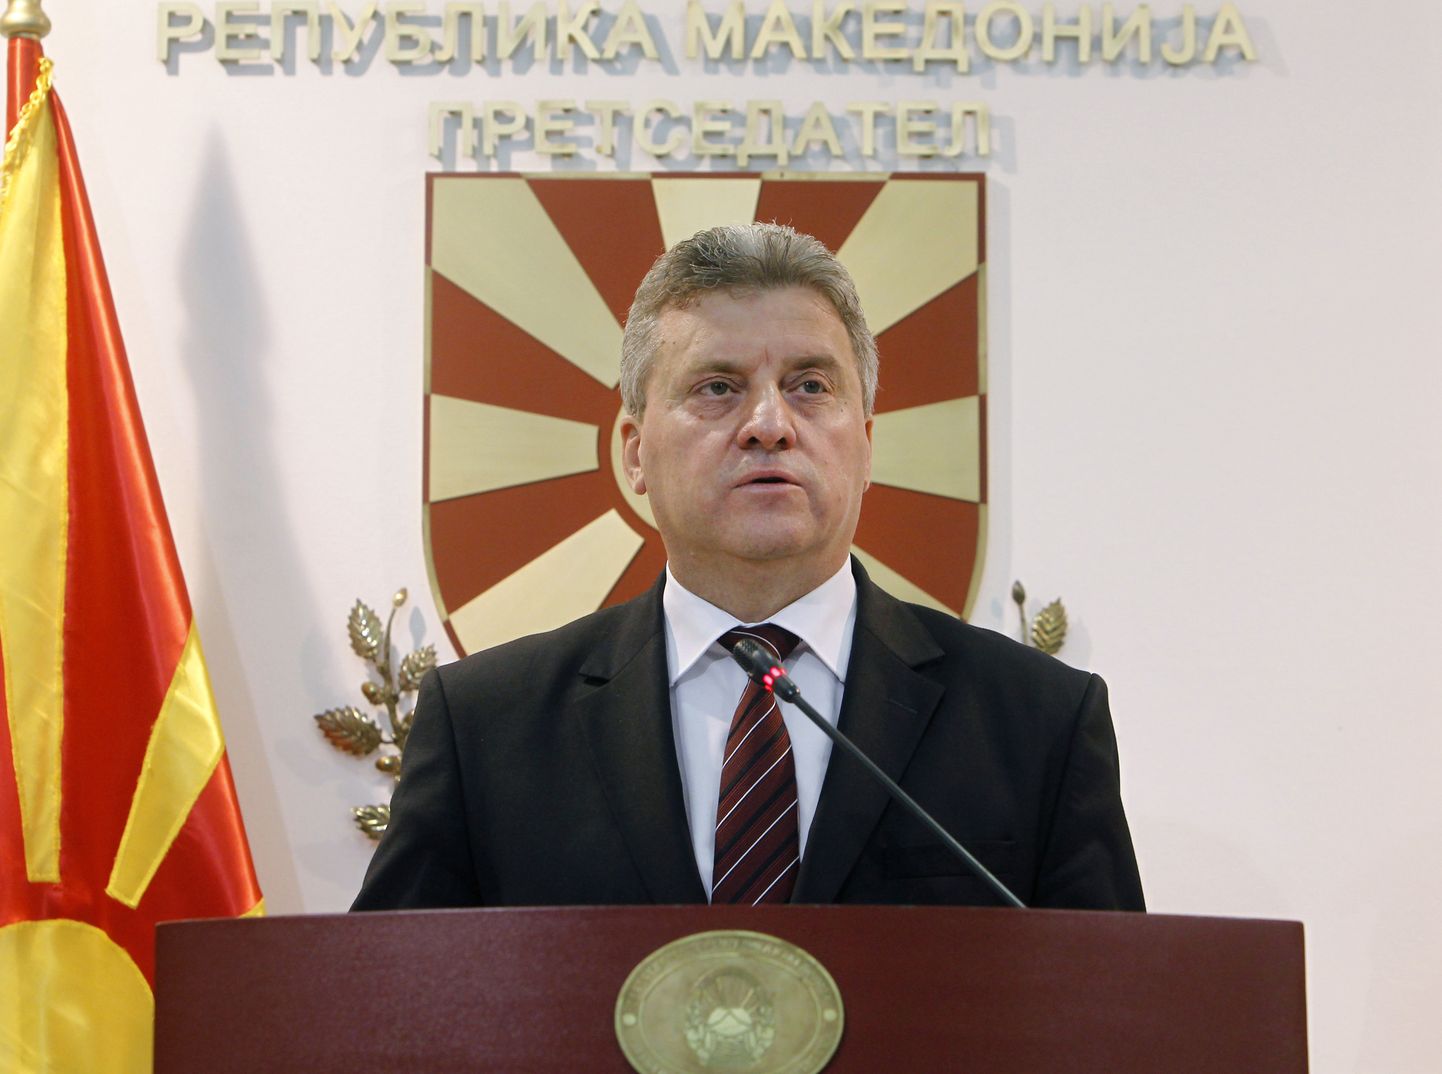 Makedoonia president Gjorge Ivanov.